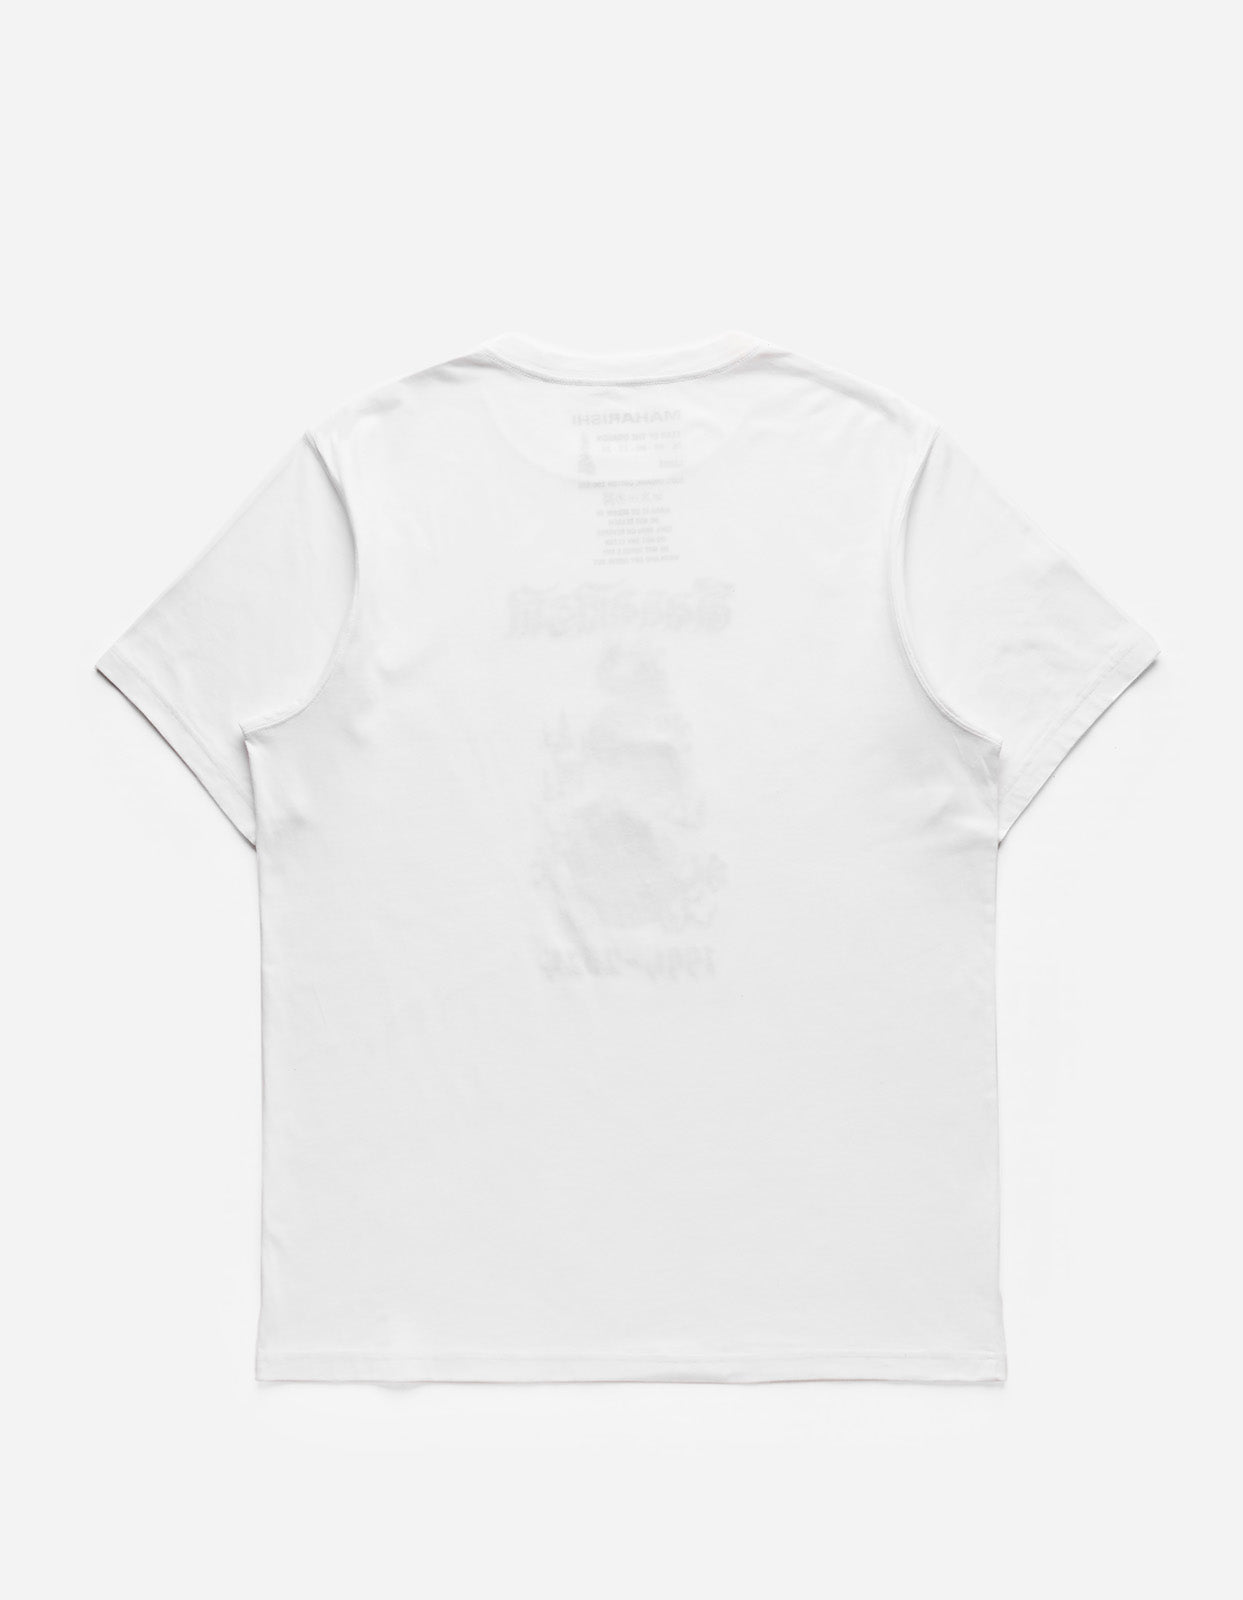 5017 Descending Dragon T-Shirt White